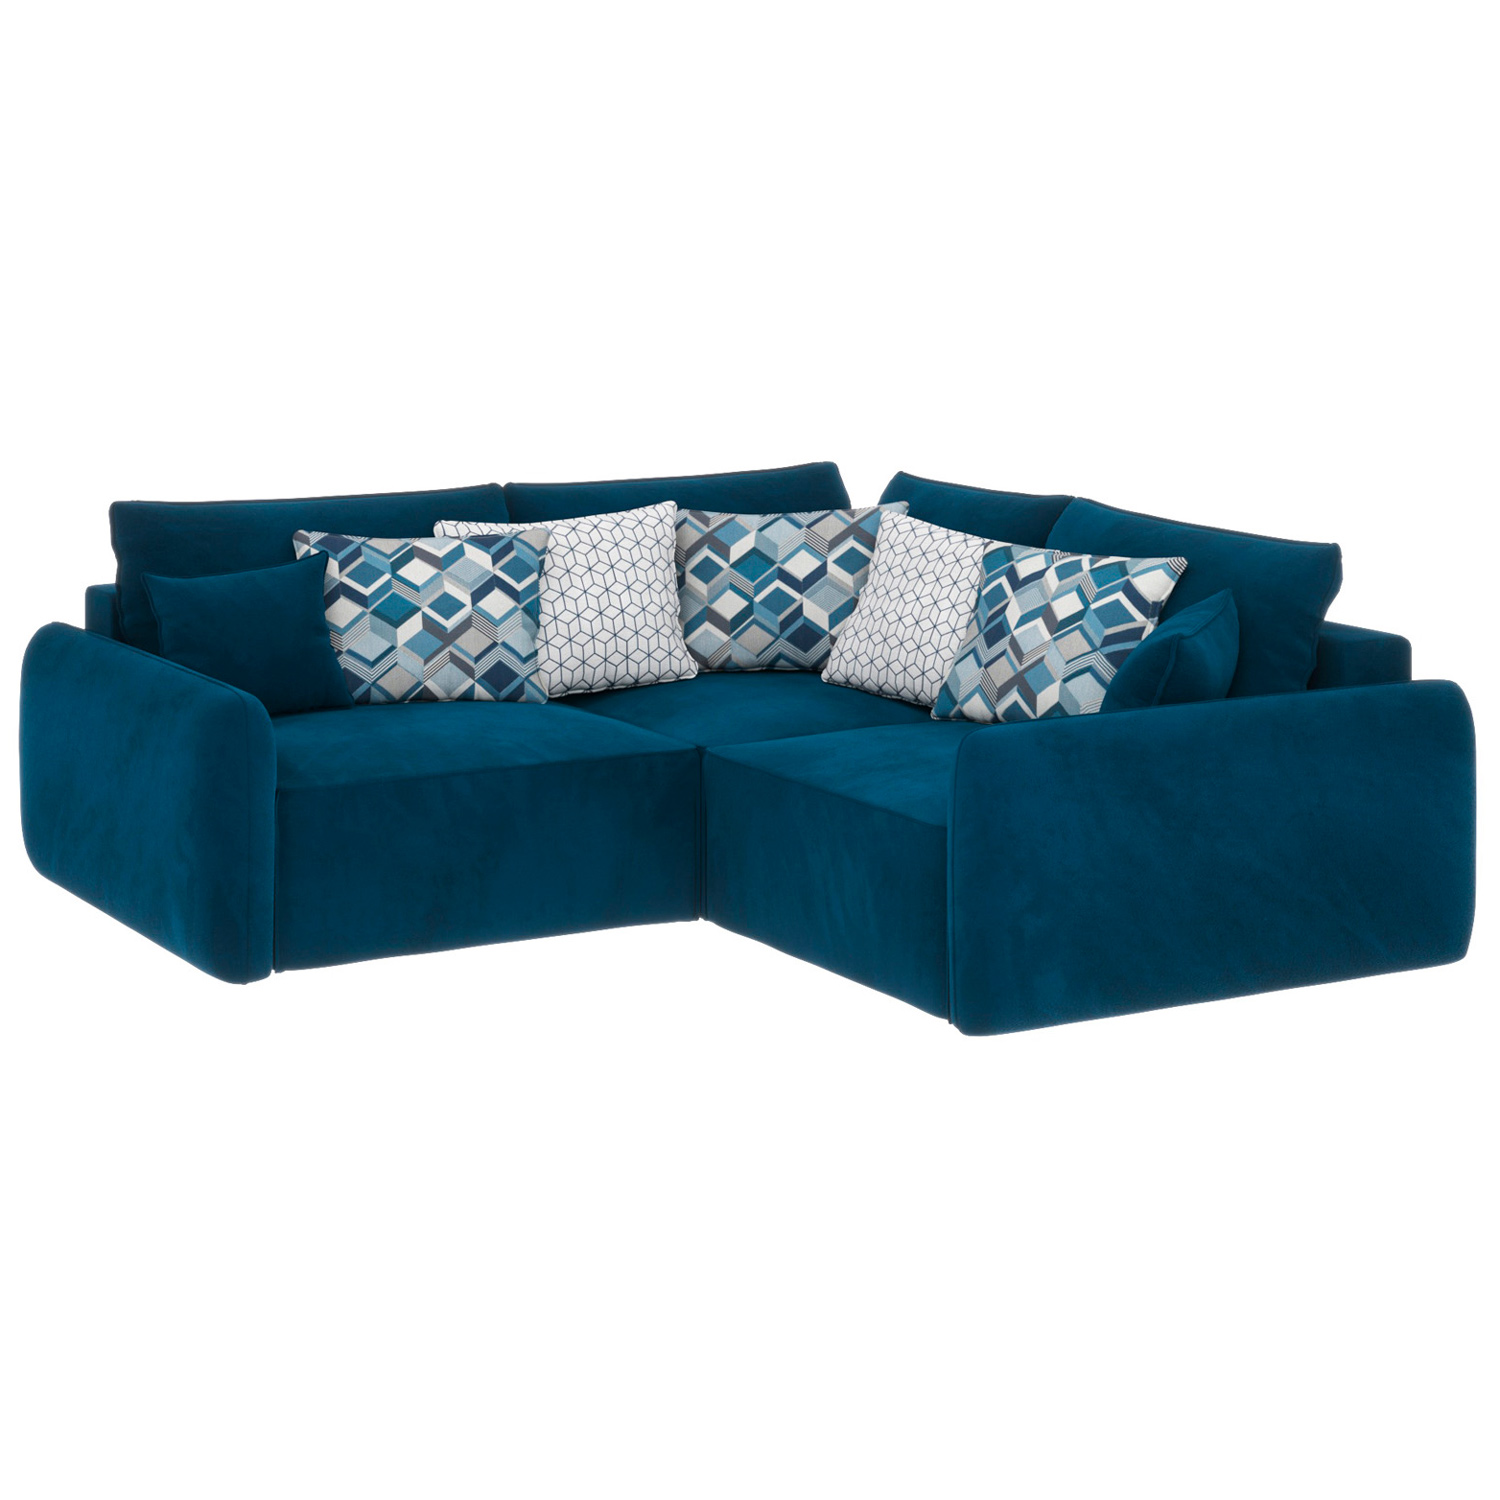 Угловой диван-кровать Портленд изумрудного цвета